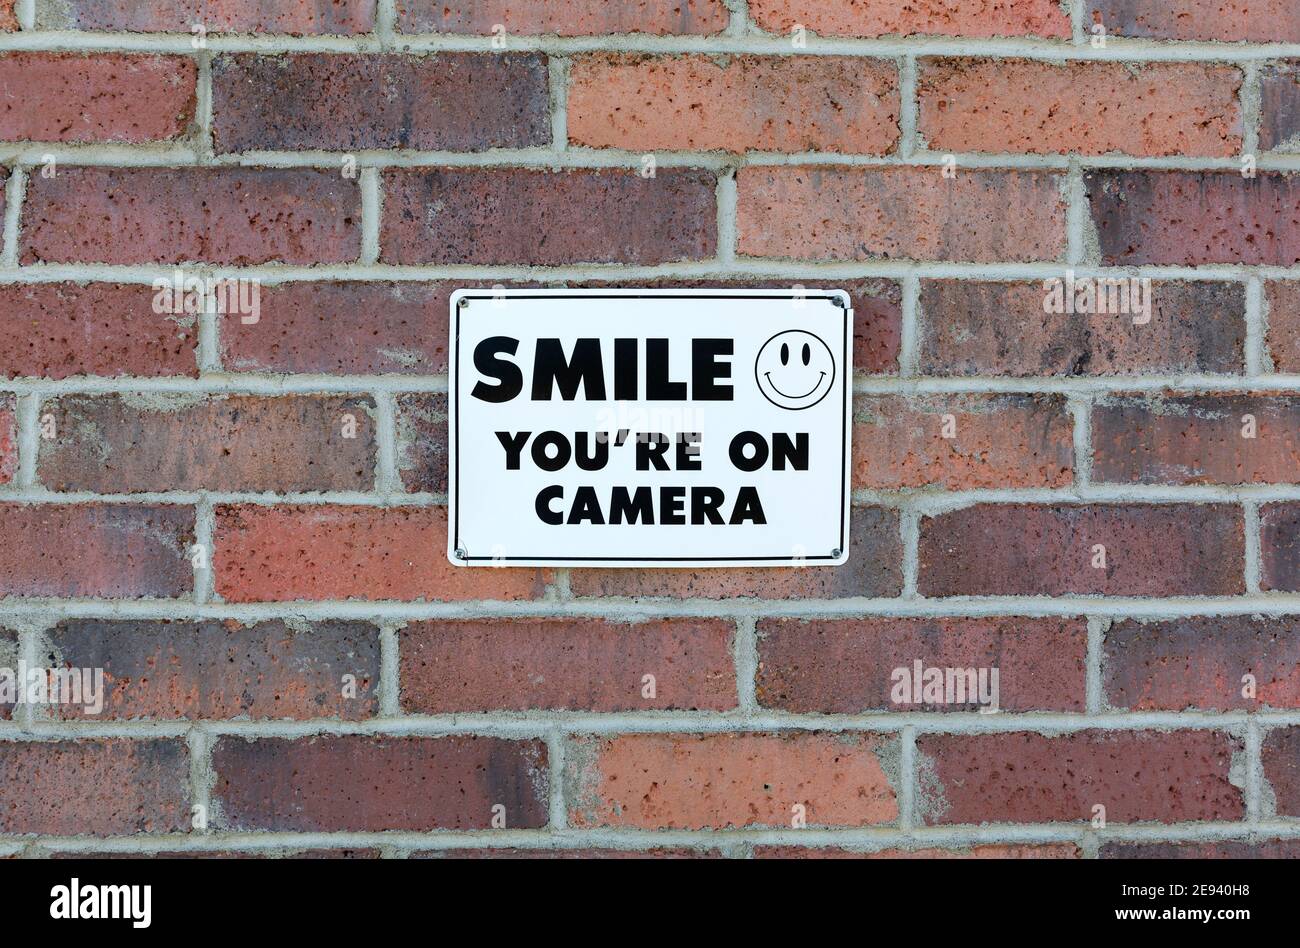 Zeichen mit einem Smiley Gesicht sagen, dass Sie auf einer Mauer aufgenommen werden. Stockfoto